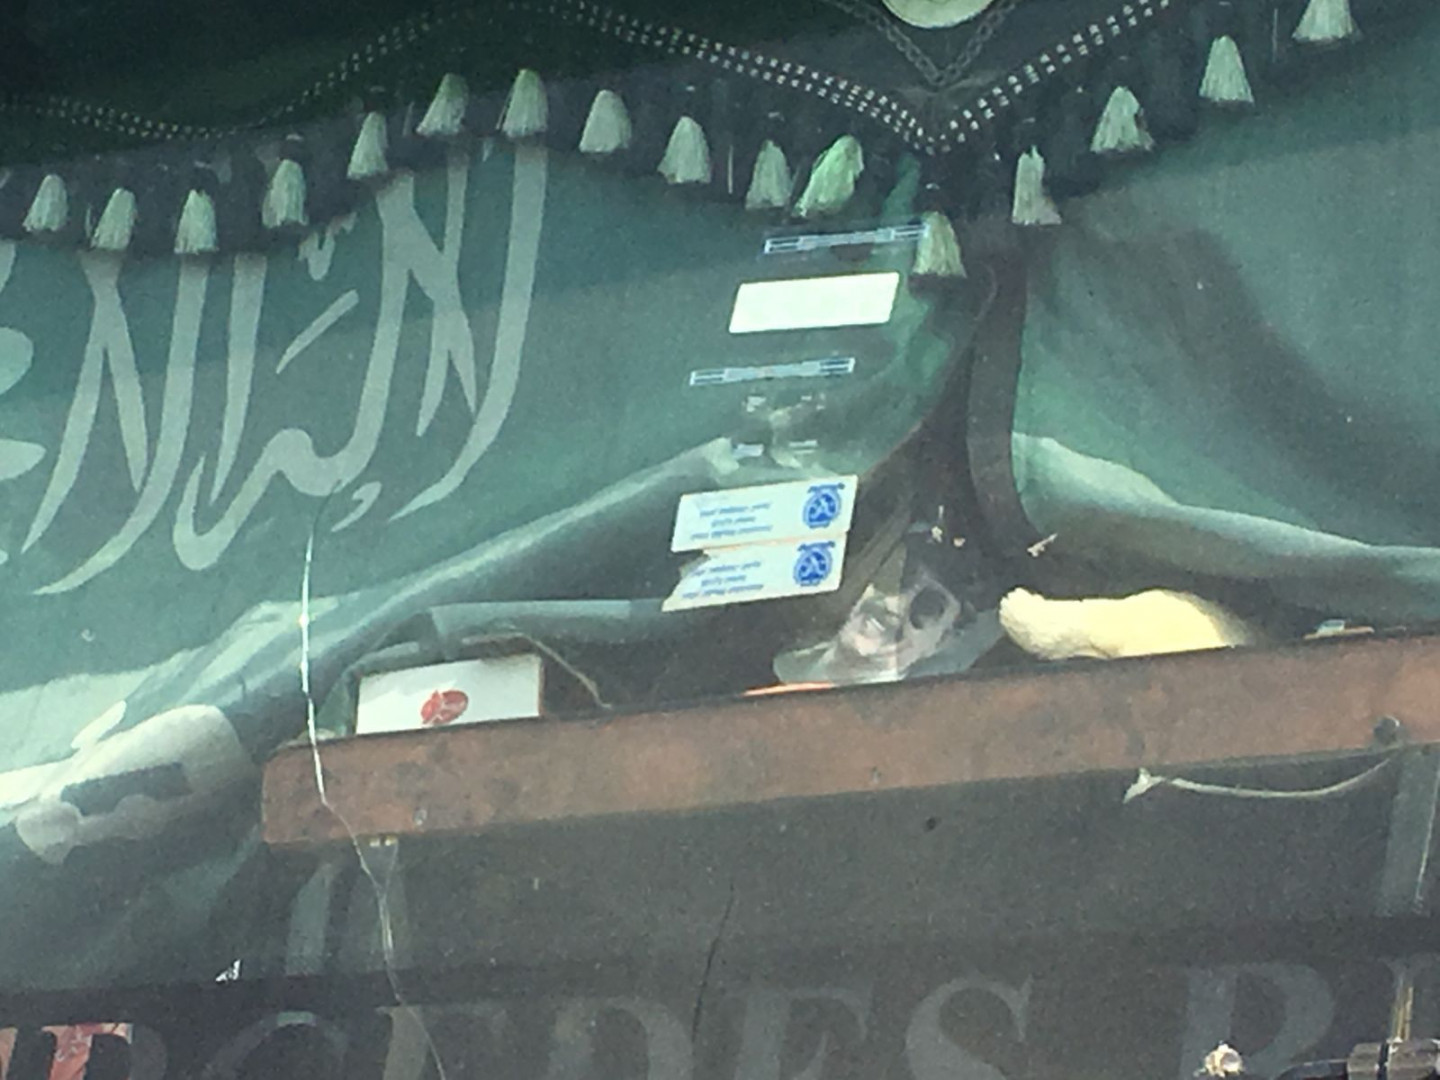 ضبط شاحنة بداخلها أعلام سعودية وصور لصدام حسين شرقي بغداد